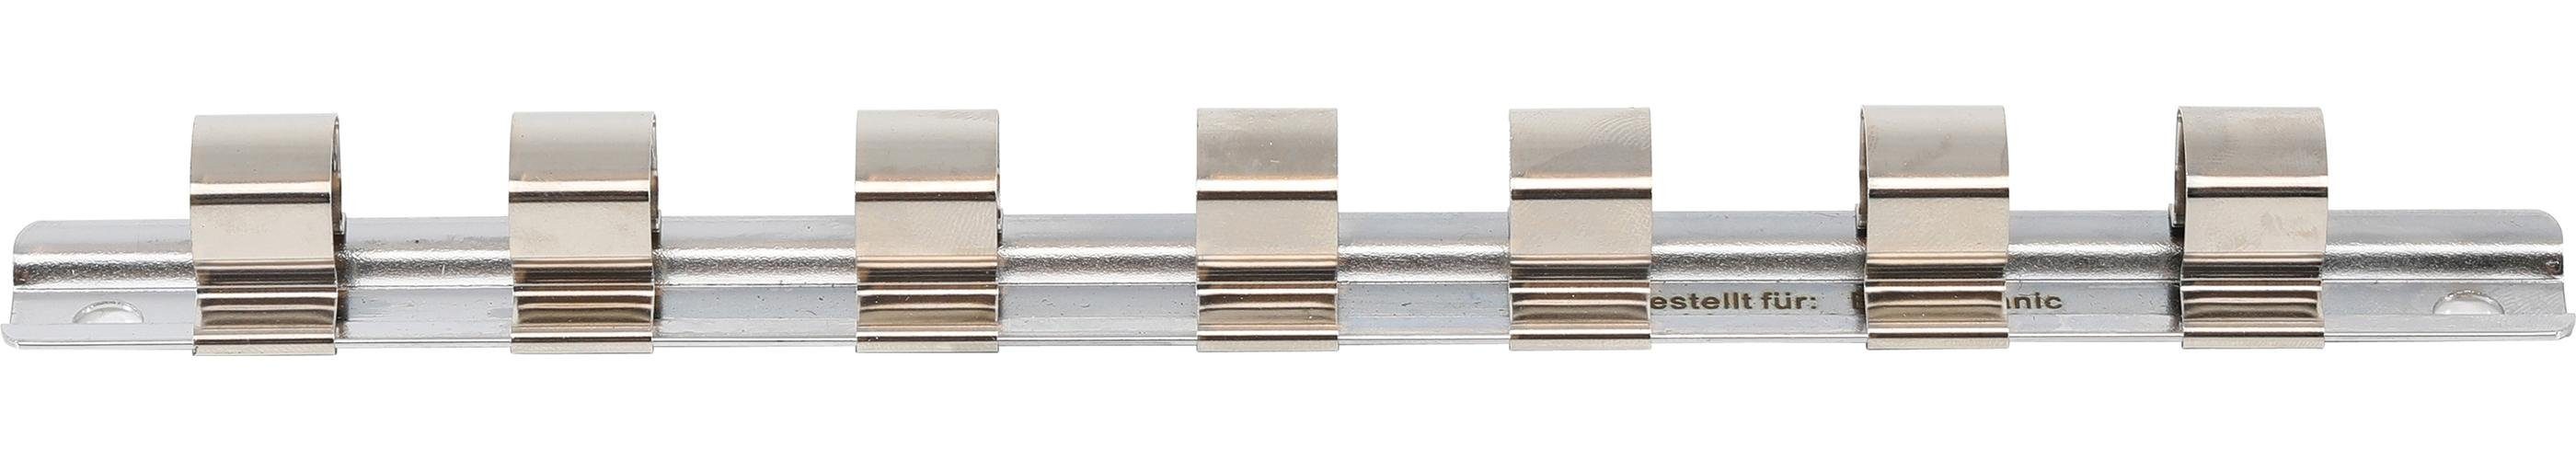 BGS technic Ratschenringschlüssel Aufsteckschiene mit 7 Clips, 12,5 mm (1/2)